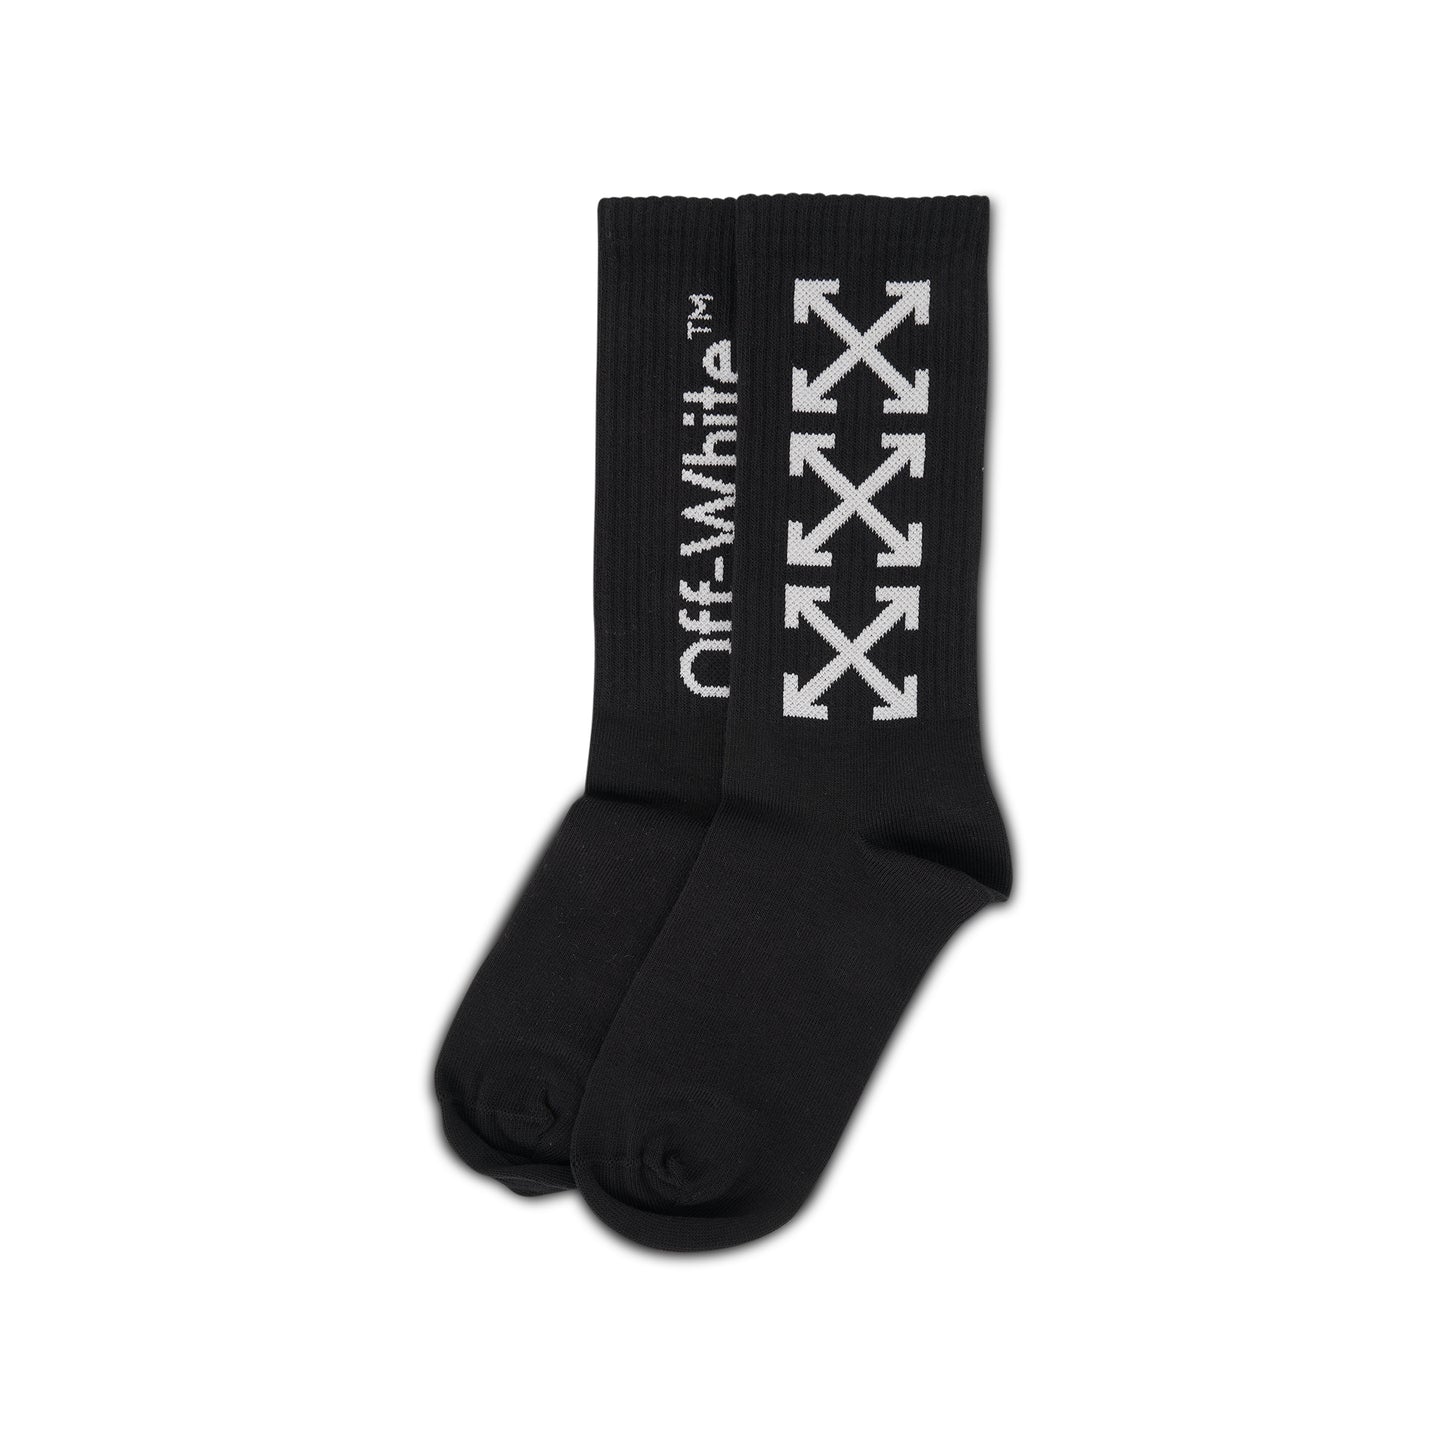 Off-White Socks in Black/White